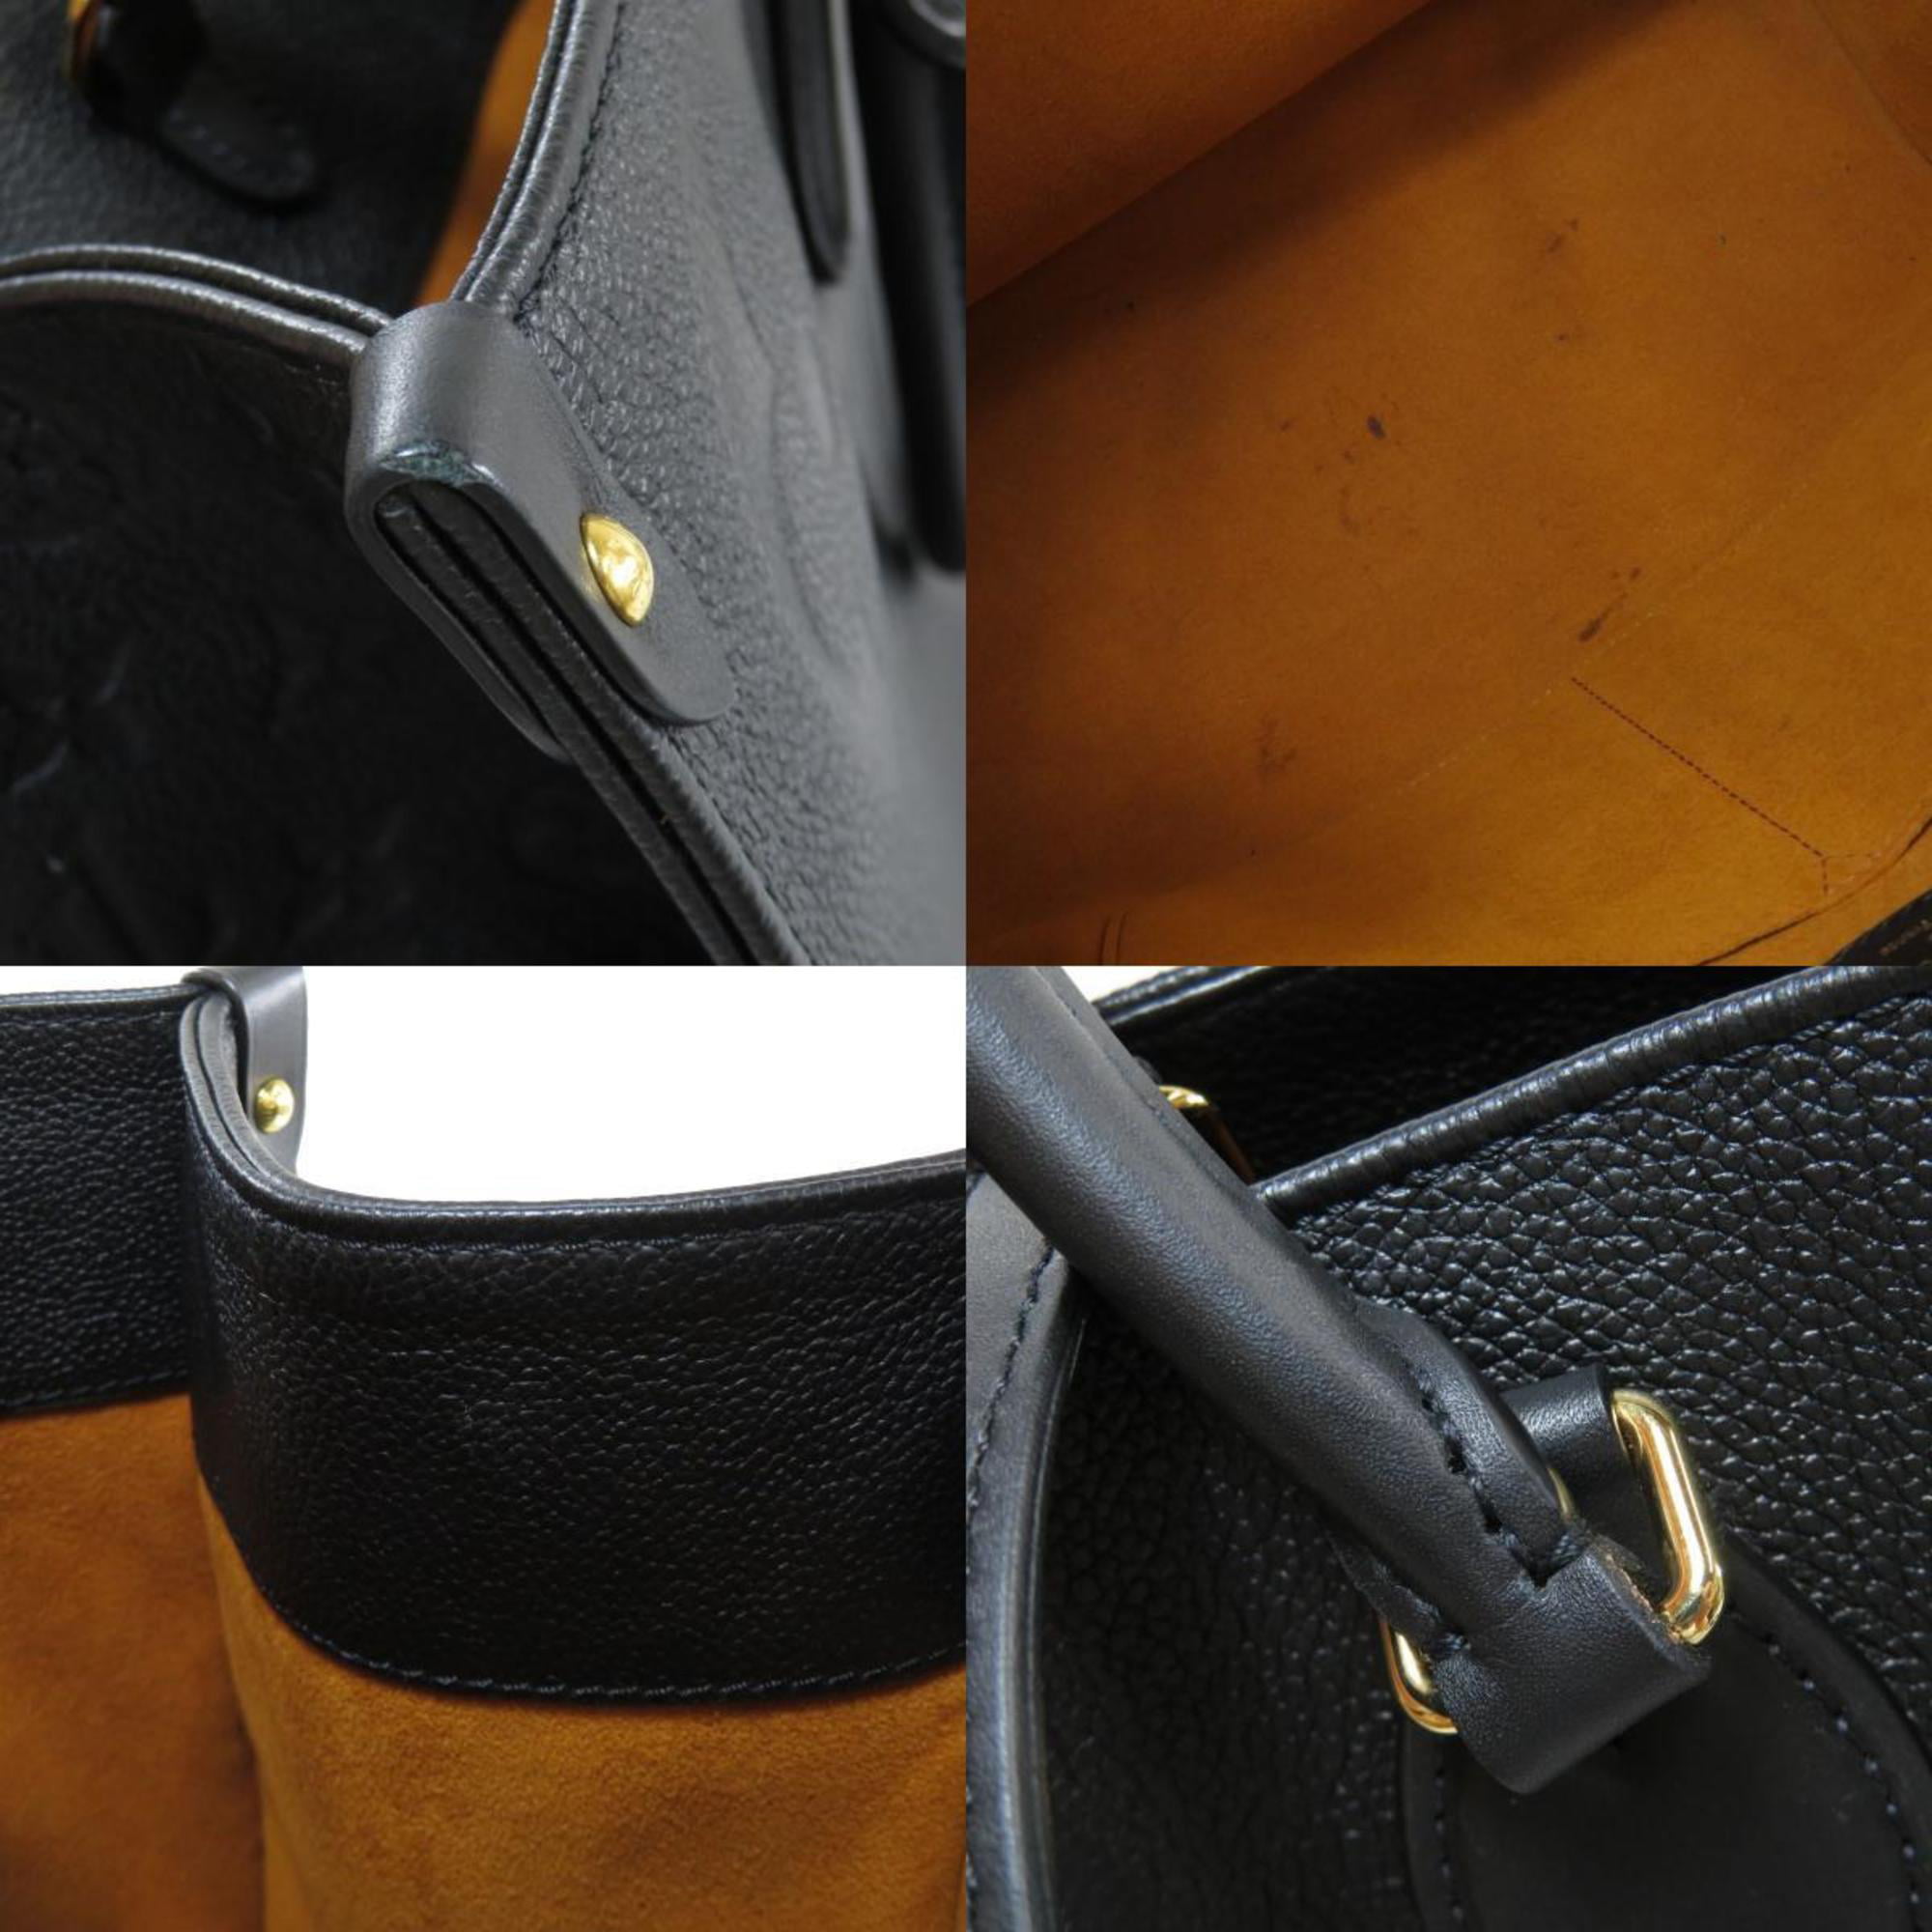 Authenticated used Louis Vuitton M44925 on The Go GM Amplant Tote Bag Women's Louis Vuitton, Adult Unisex, Size: (HxWxD): 31cm x 41cm x 17cm / 12.2